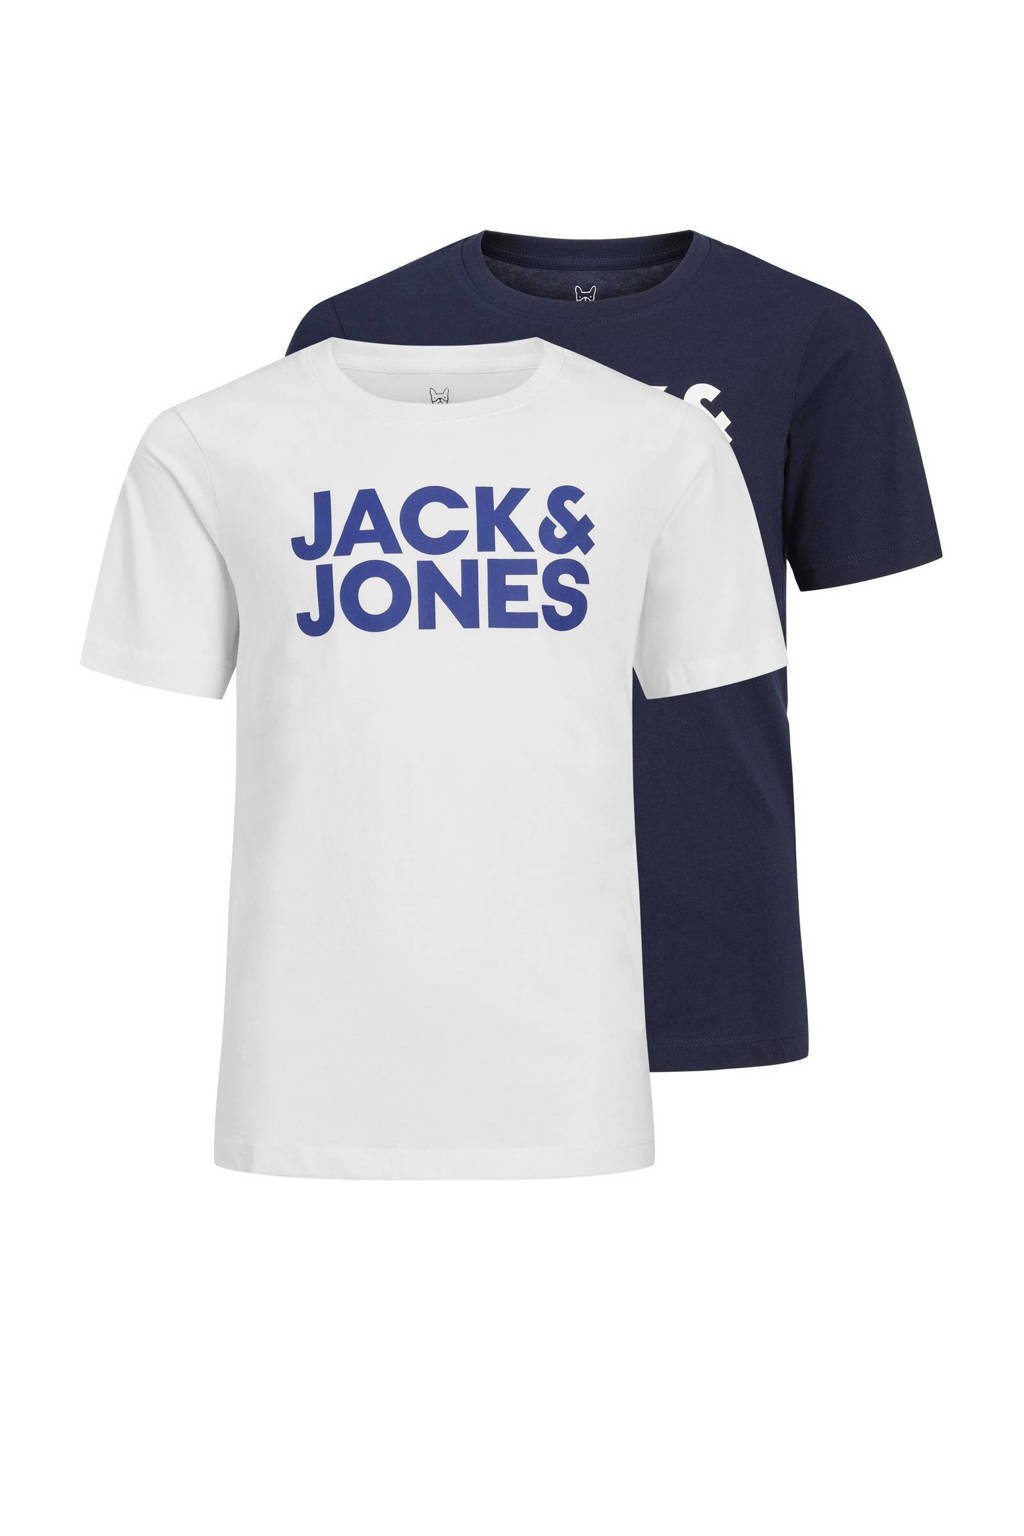 Set van 2 donkerblauw en witte jongens JACK & JONES JUNIOR t-shirt van katoen met logo dessin, korte mouwen en ronde hals